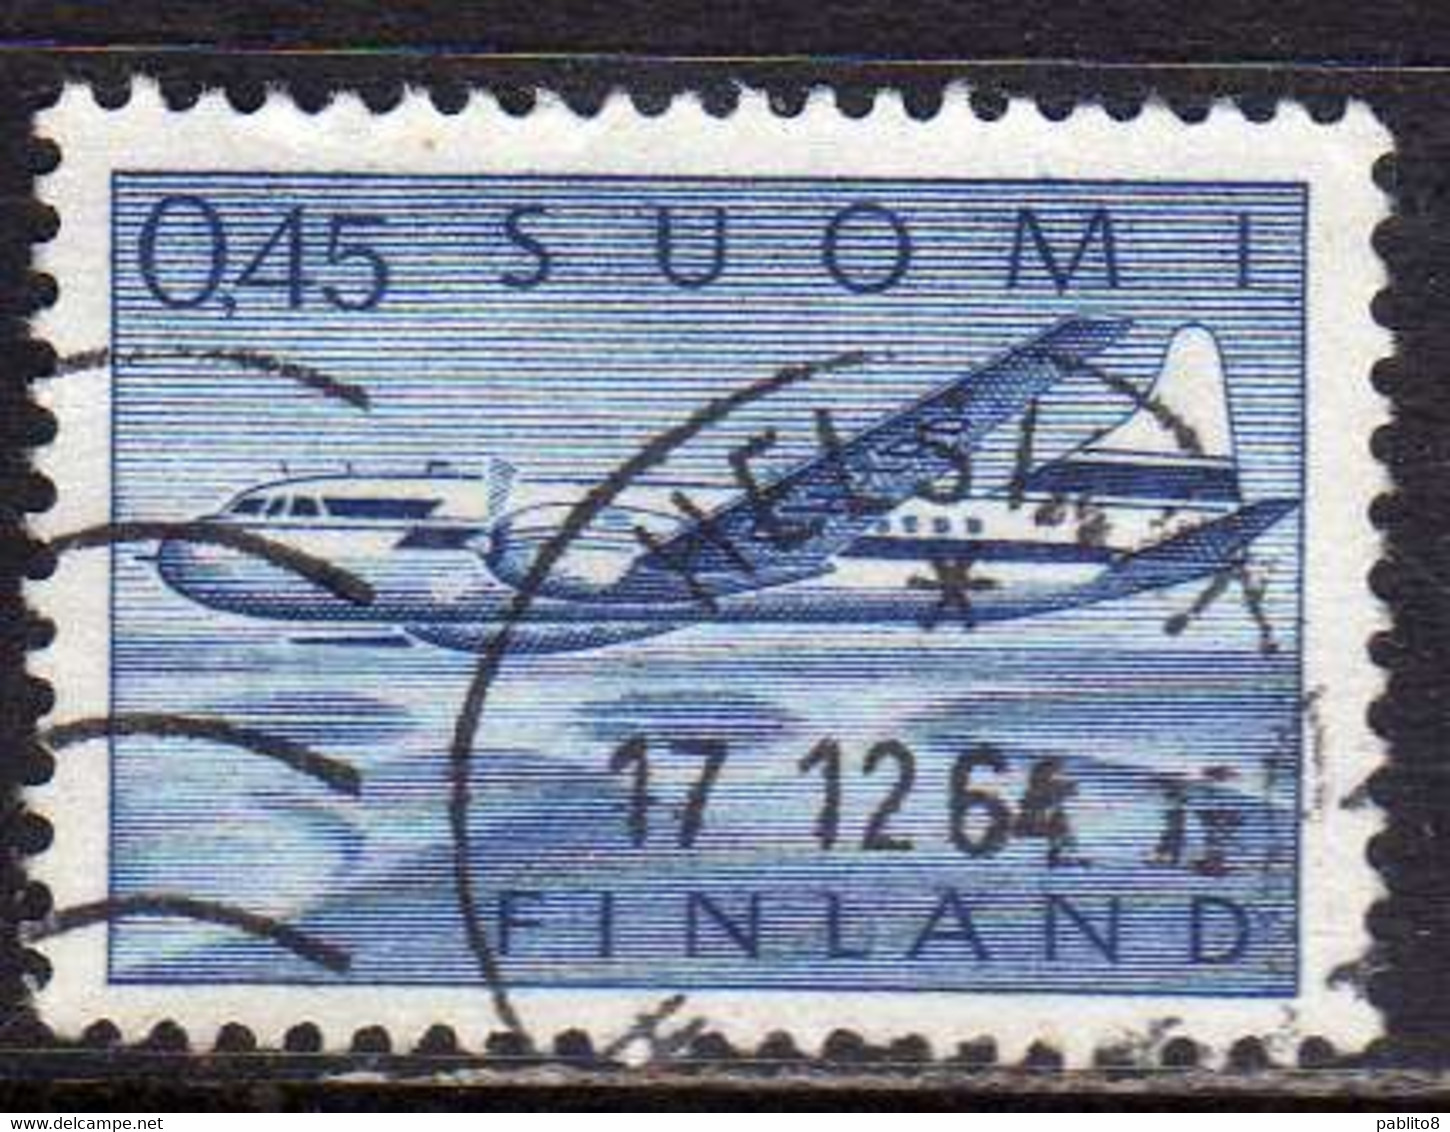 SUOMI FINLAND FINLANDIA FINLANDE 1963 AIR MAIL POSTA AEREA CONVAIR AIRPLANE 440 PLANE AVION 0.45 USATO USED OBLITERE' - Used Stamps